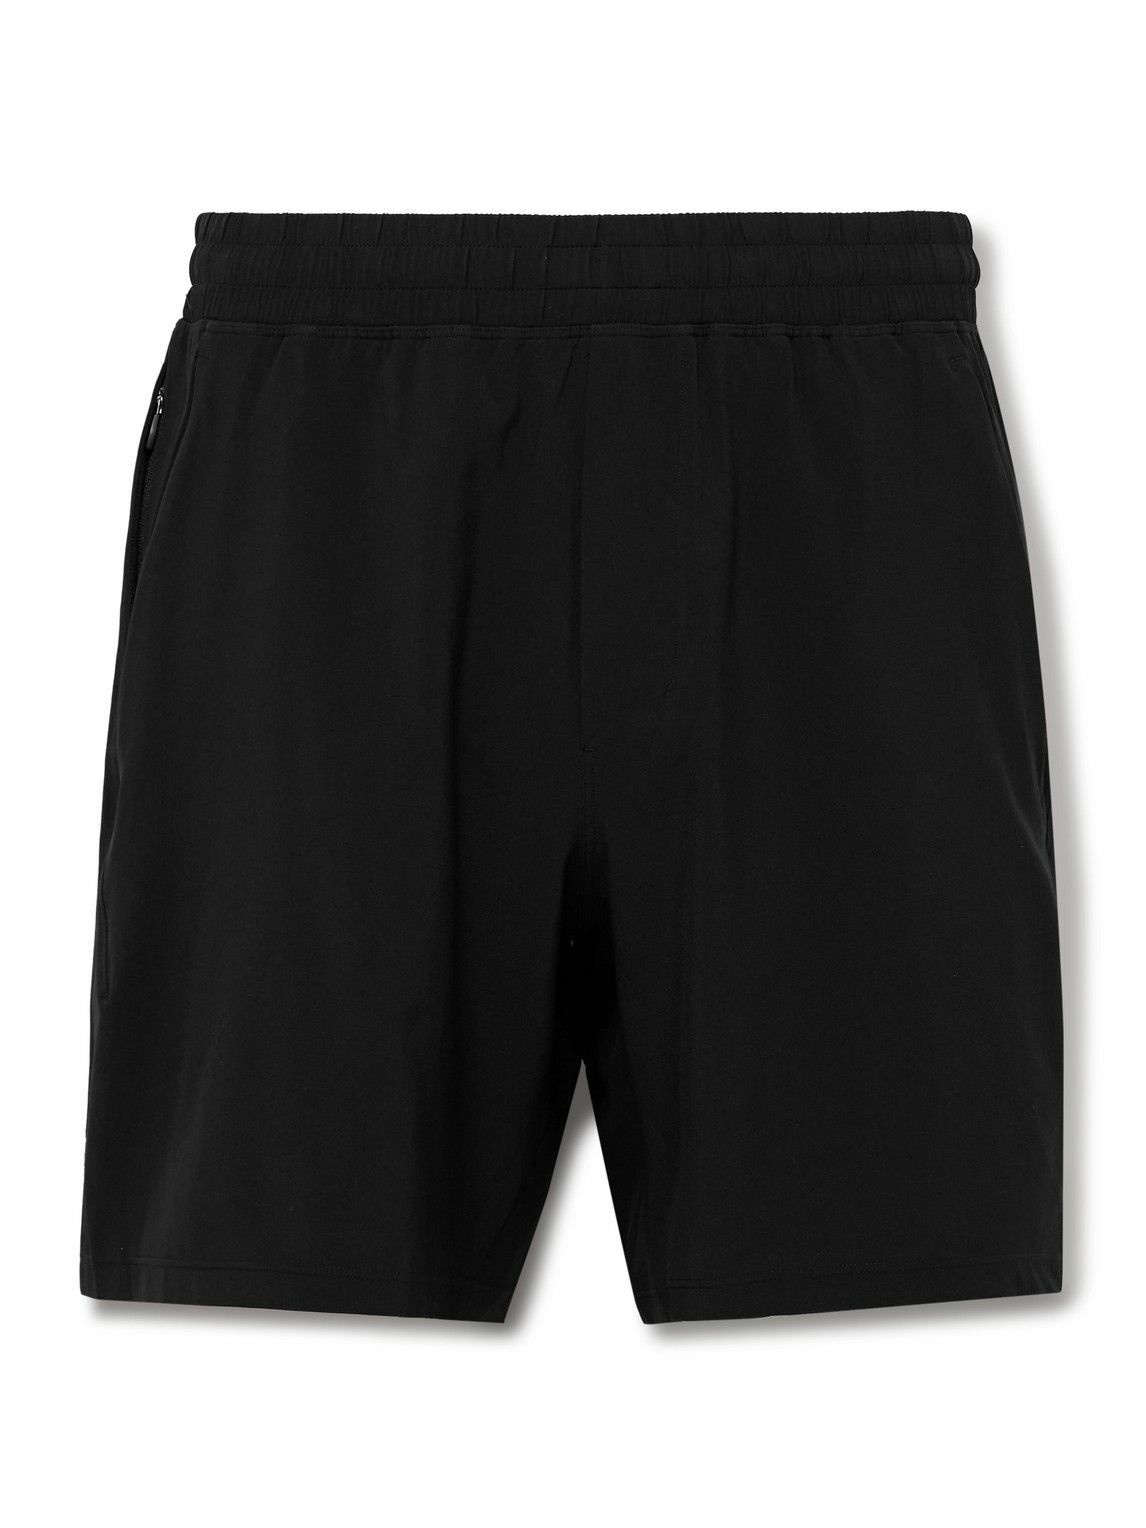 Black Commission 7” jersey shorts, Lululemon